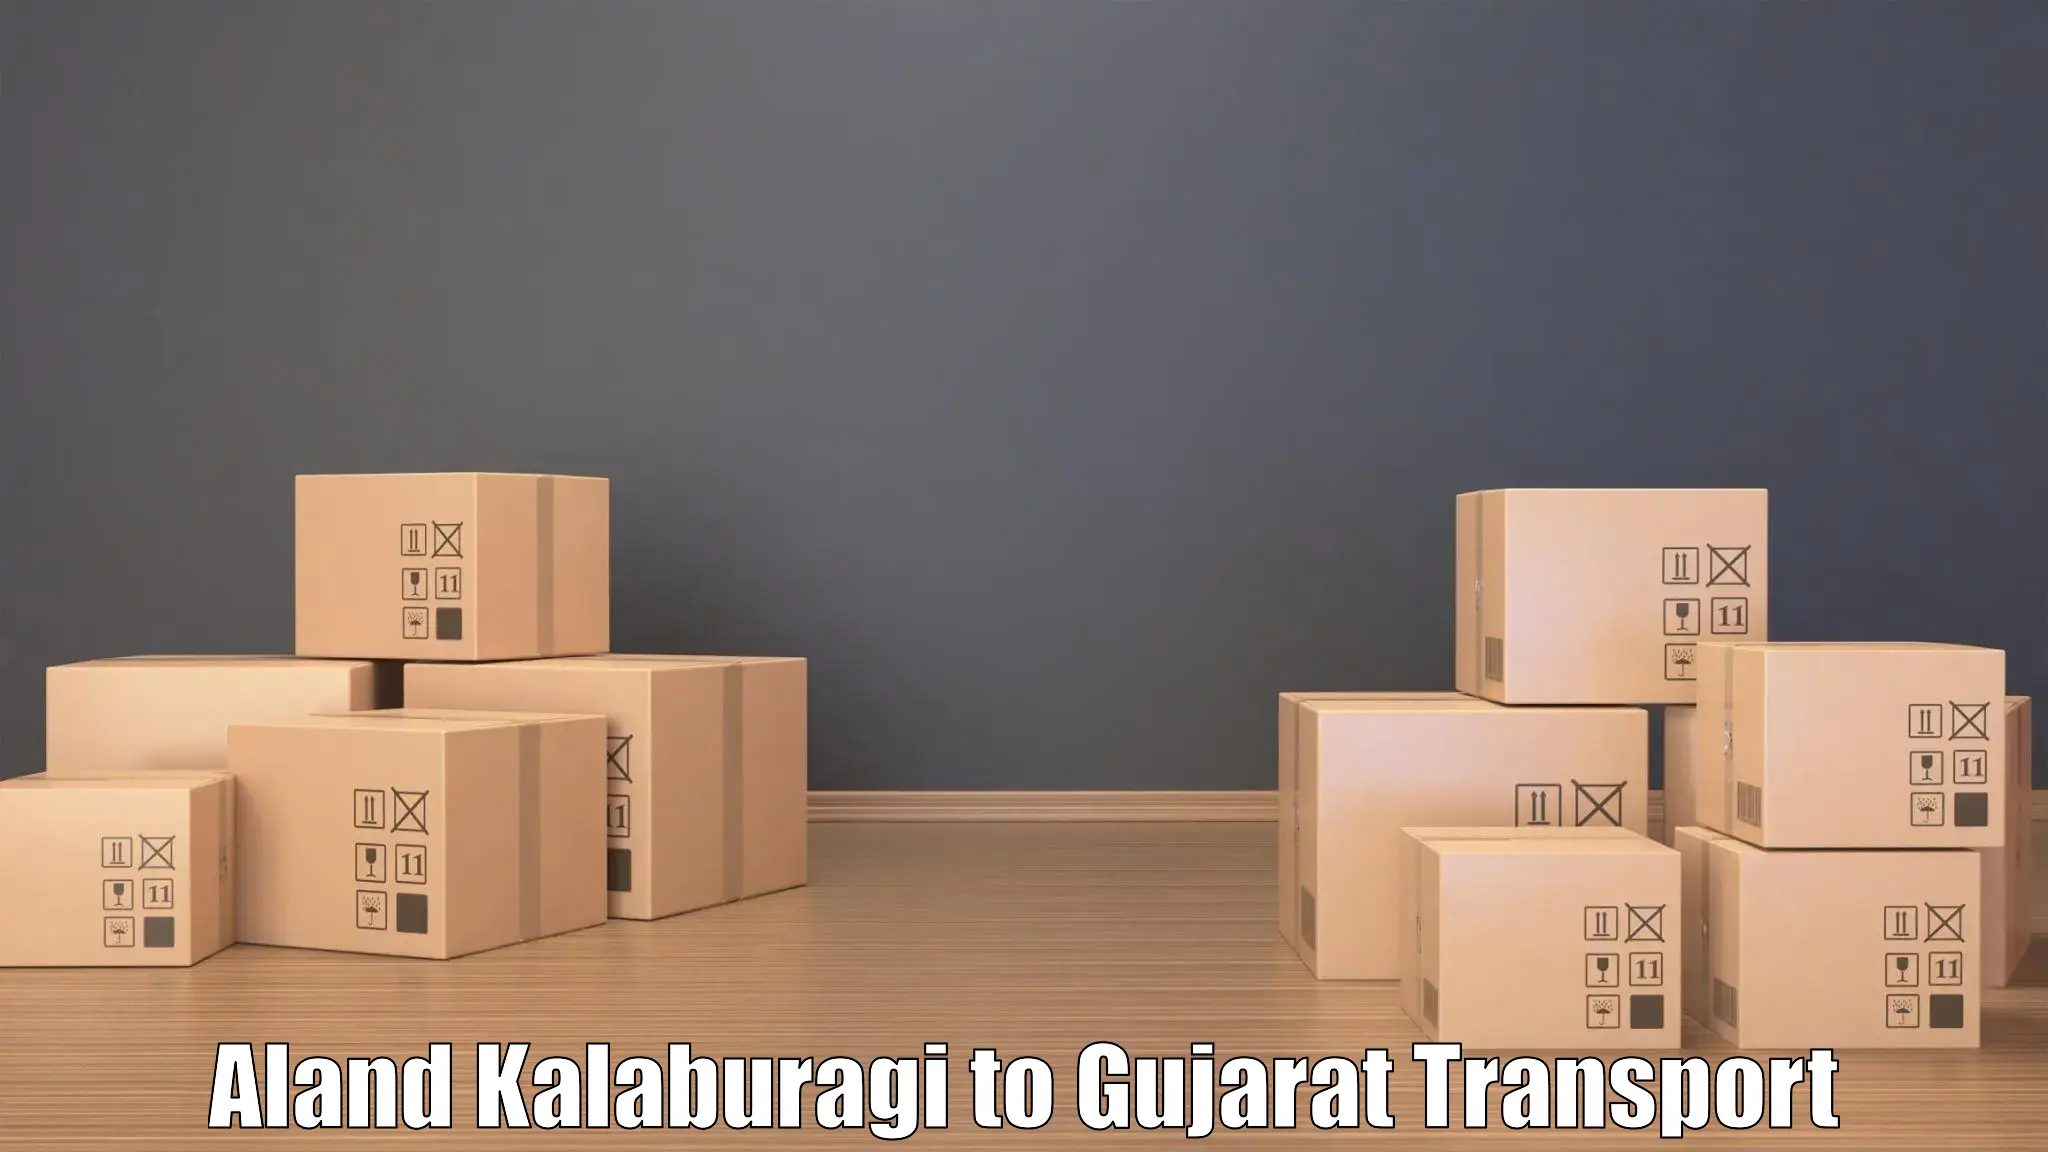 Sending bike to another city Aland Kalaburagi to Gujarat